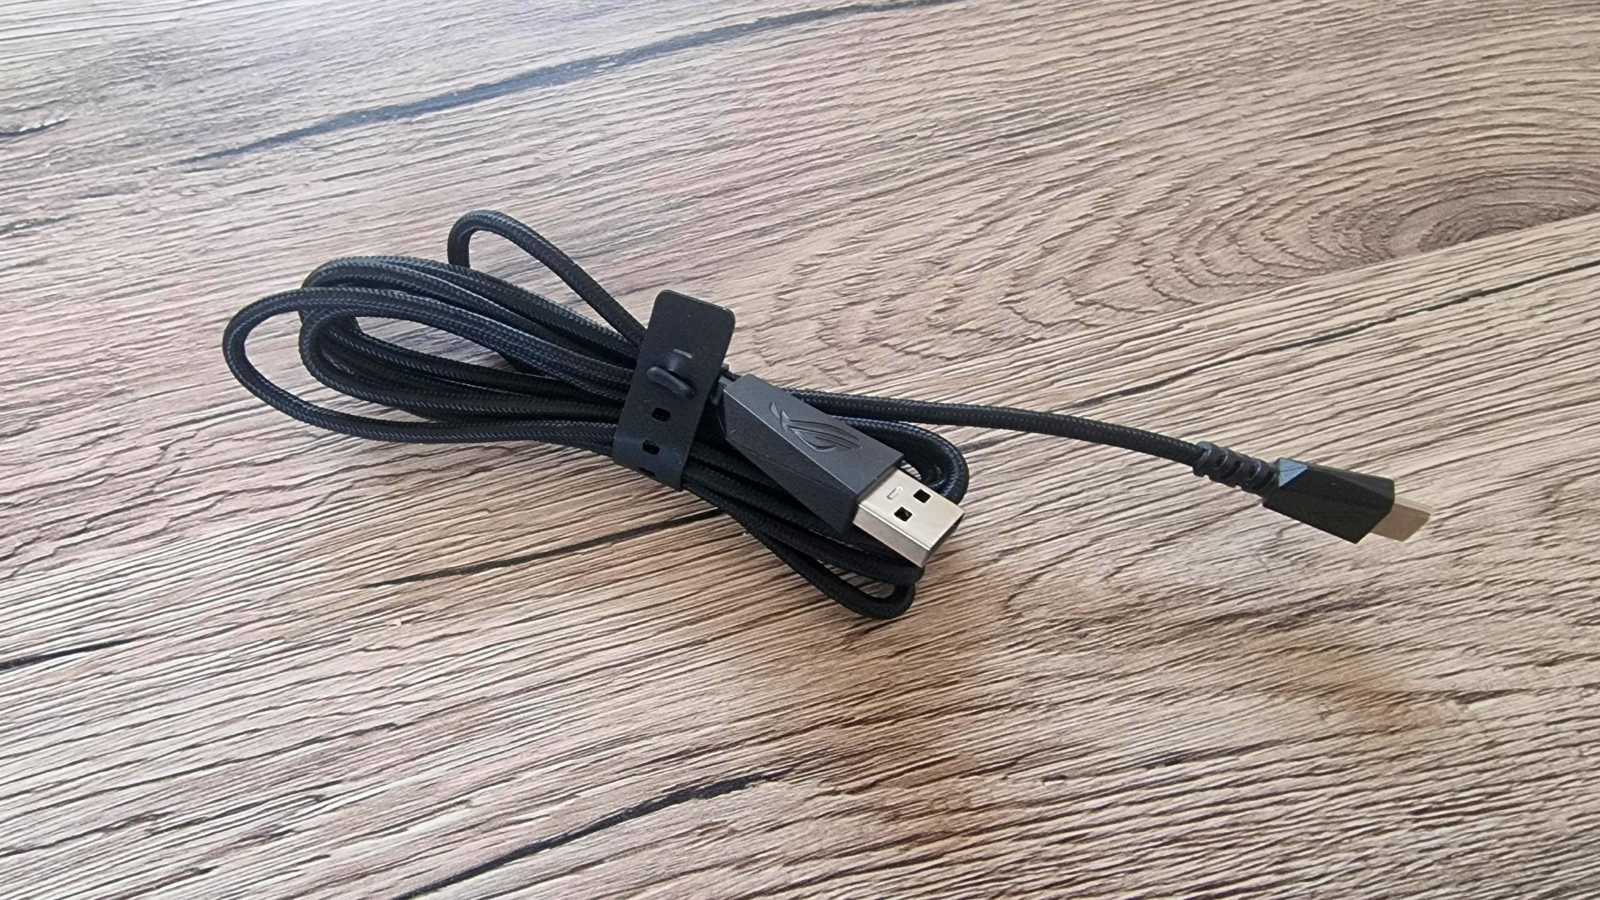 Odolný USB-A/C kabel se vždycky hodí